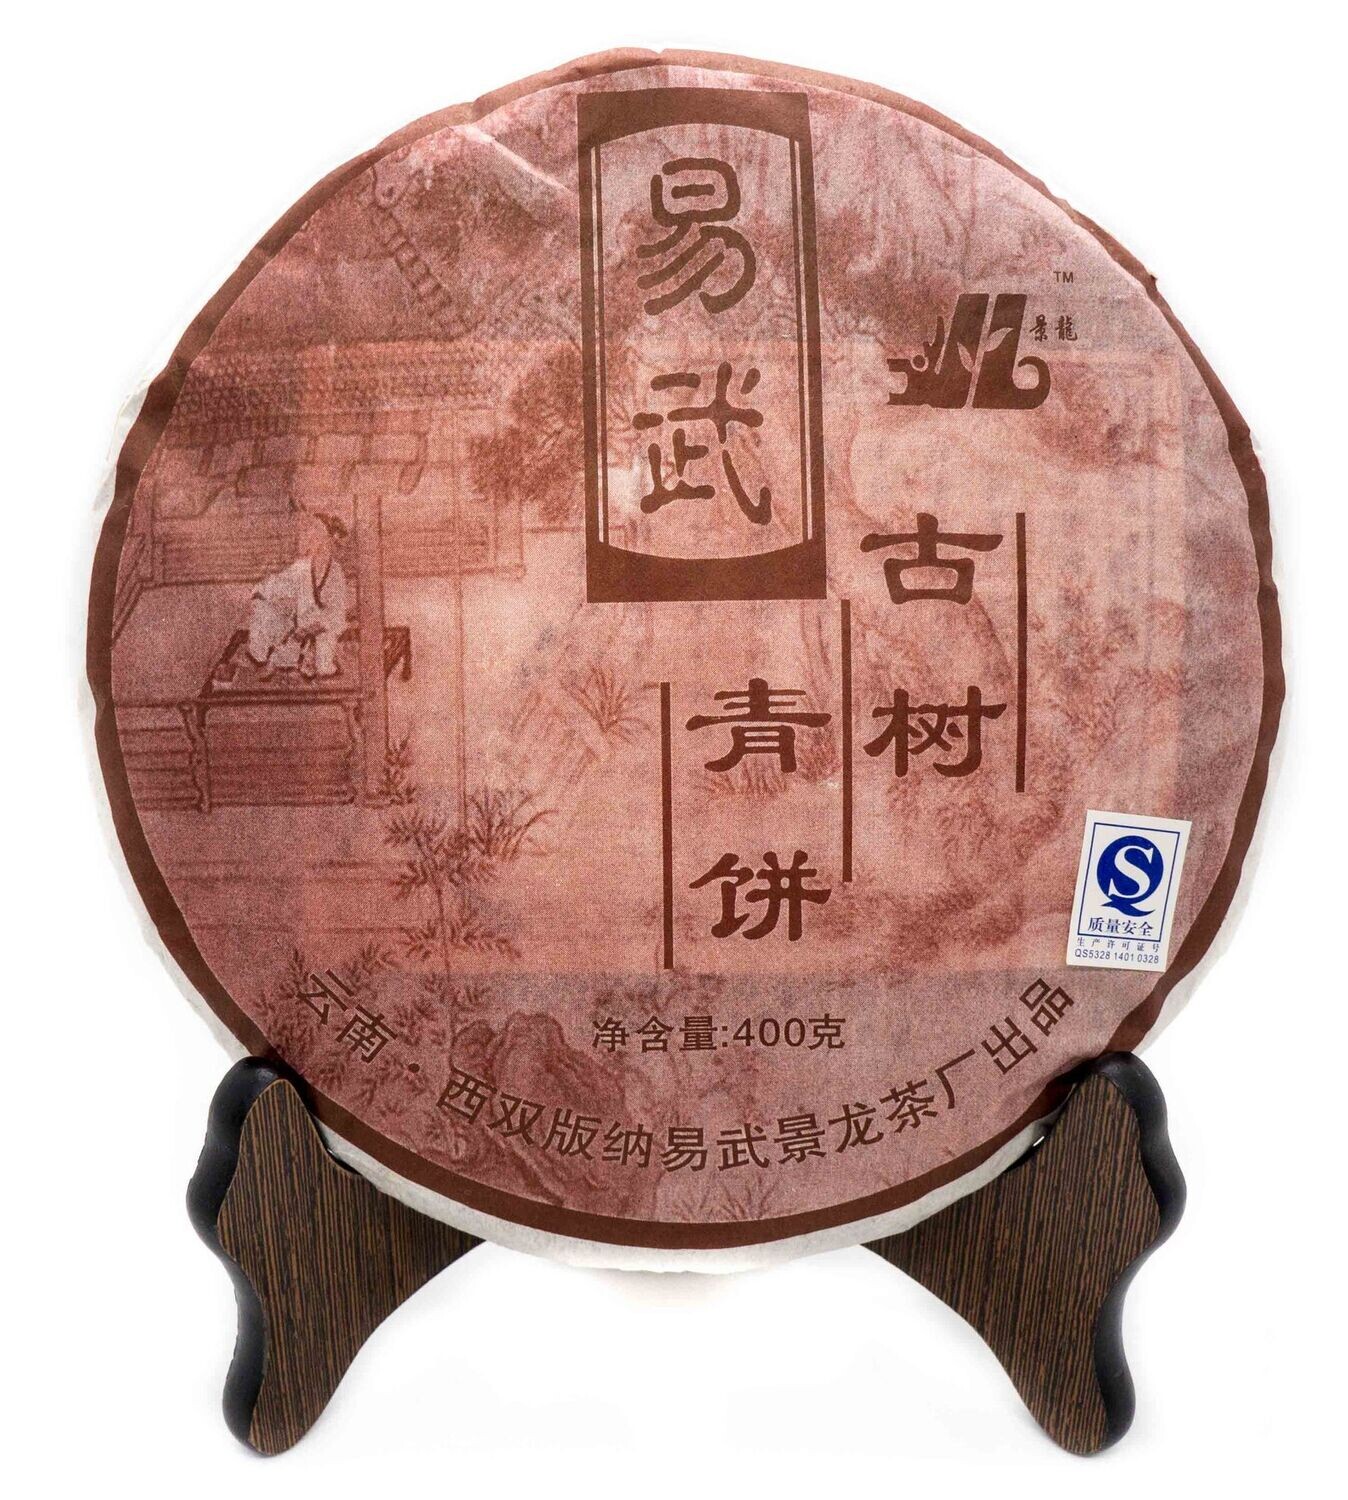 59193 Чай прессованный зеленый Пуэр Шэн "Цзинлун, Иу Гушу Цинбин 2008г", ци цзы бин 400 гр